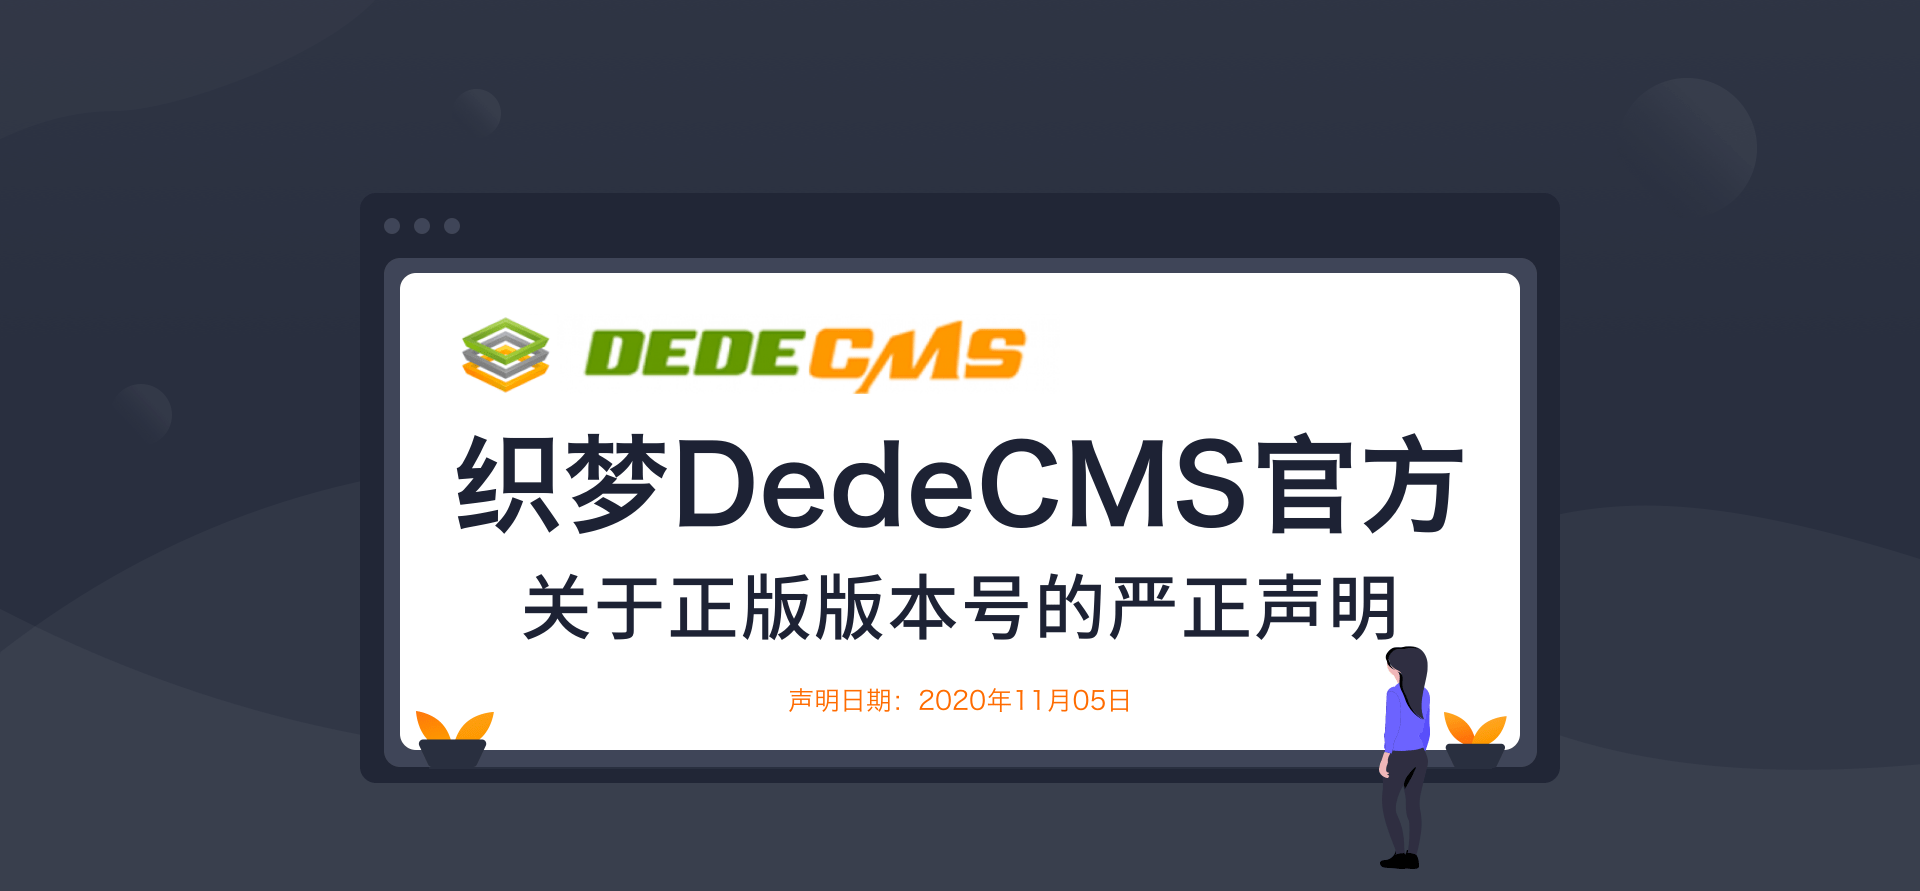 织梦dedecms全新升级DedeCMSV6发布了？官方又出新声明：NO